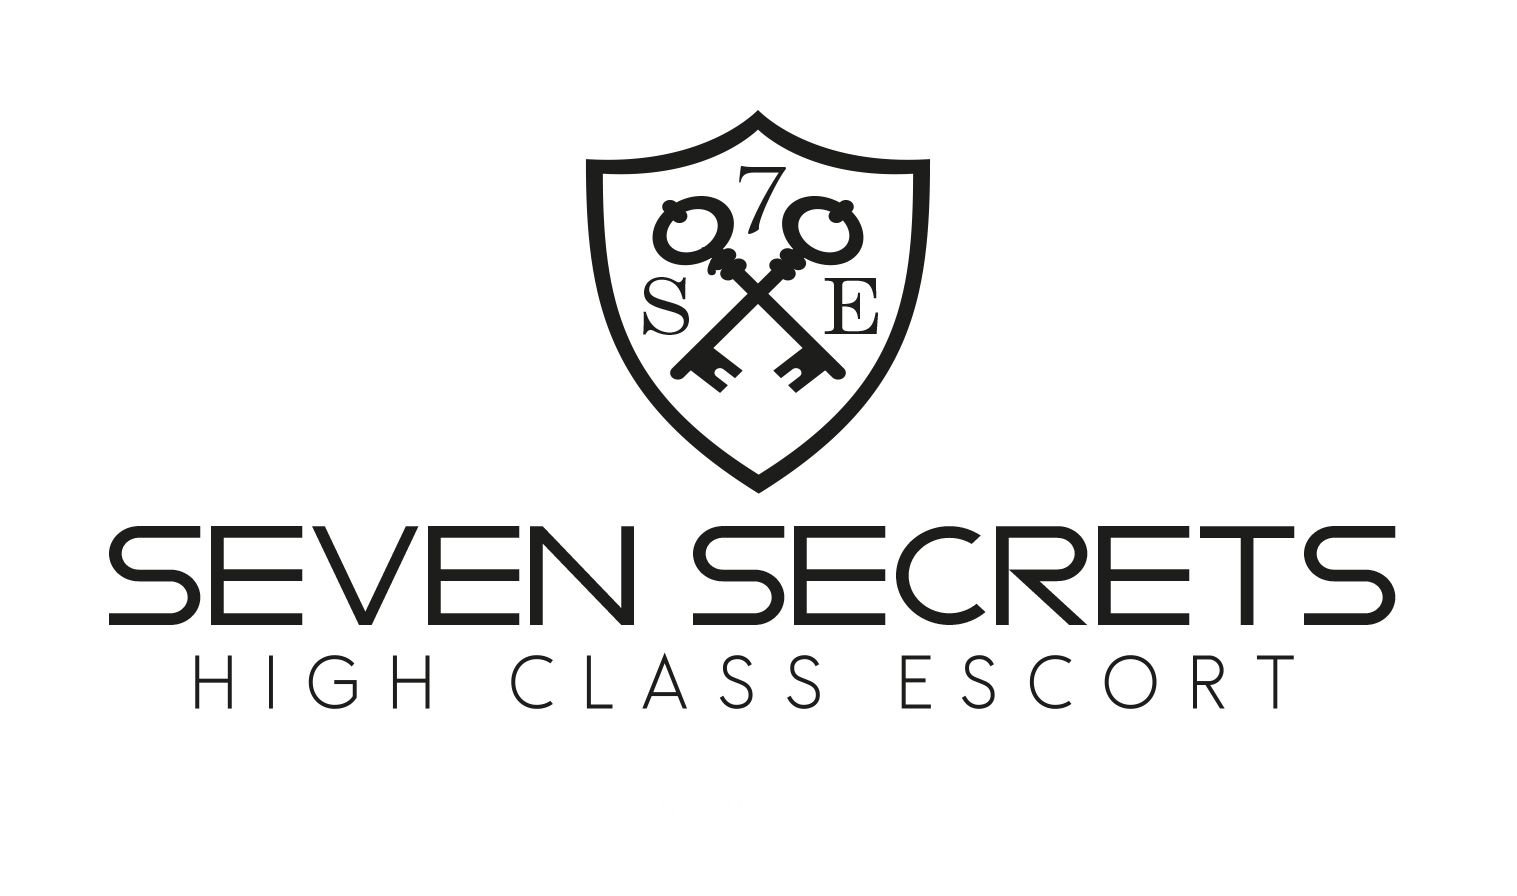 Finden Sie die besten Escort-Agenturen in Gera - place 7 Secrets Escort